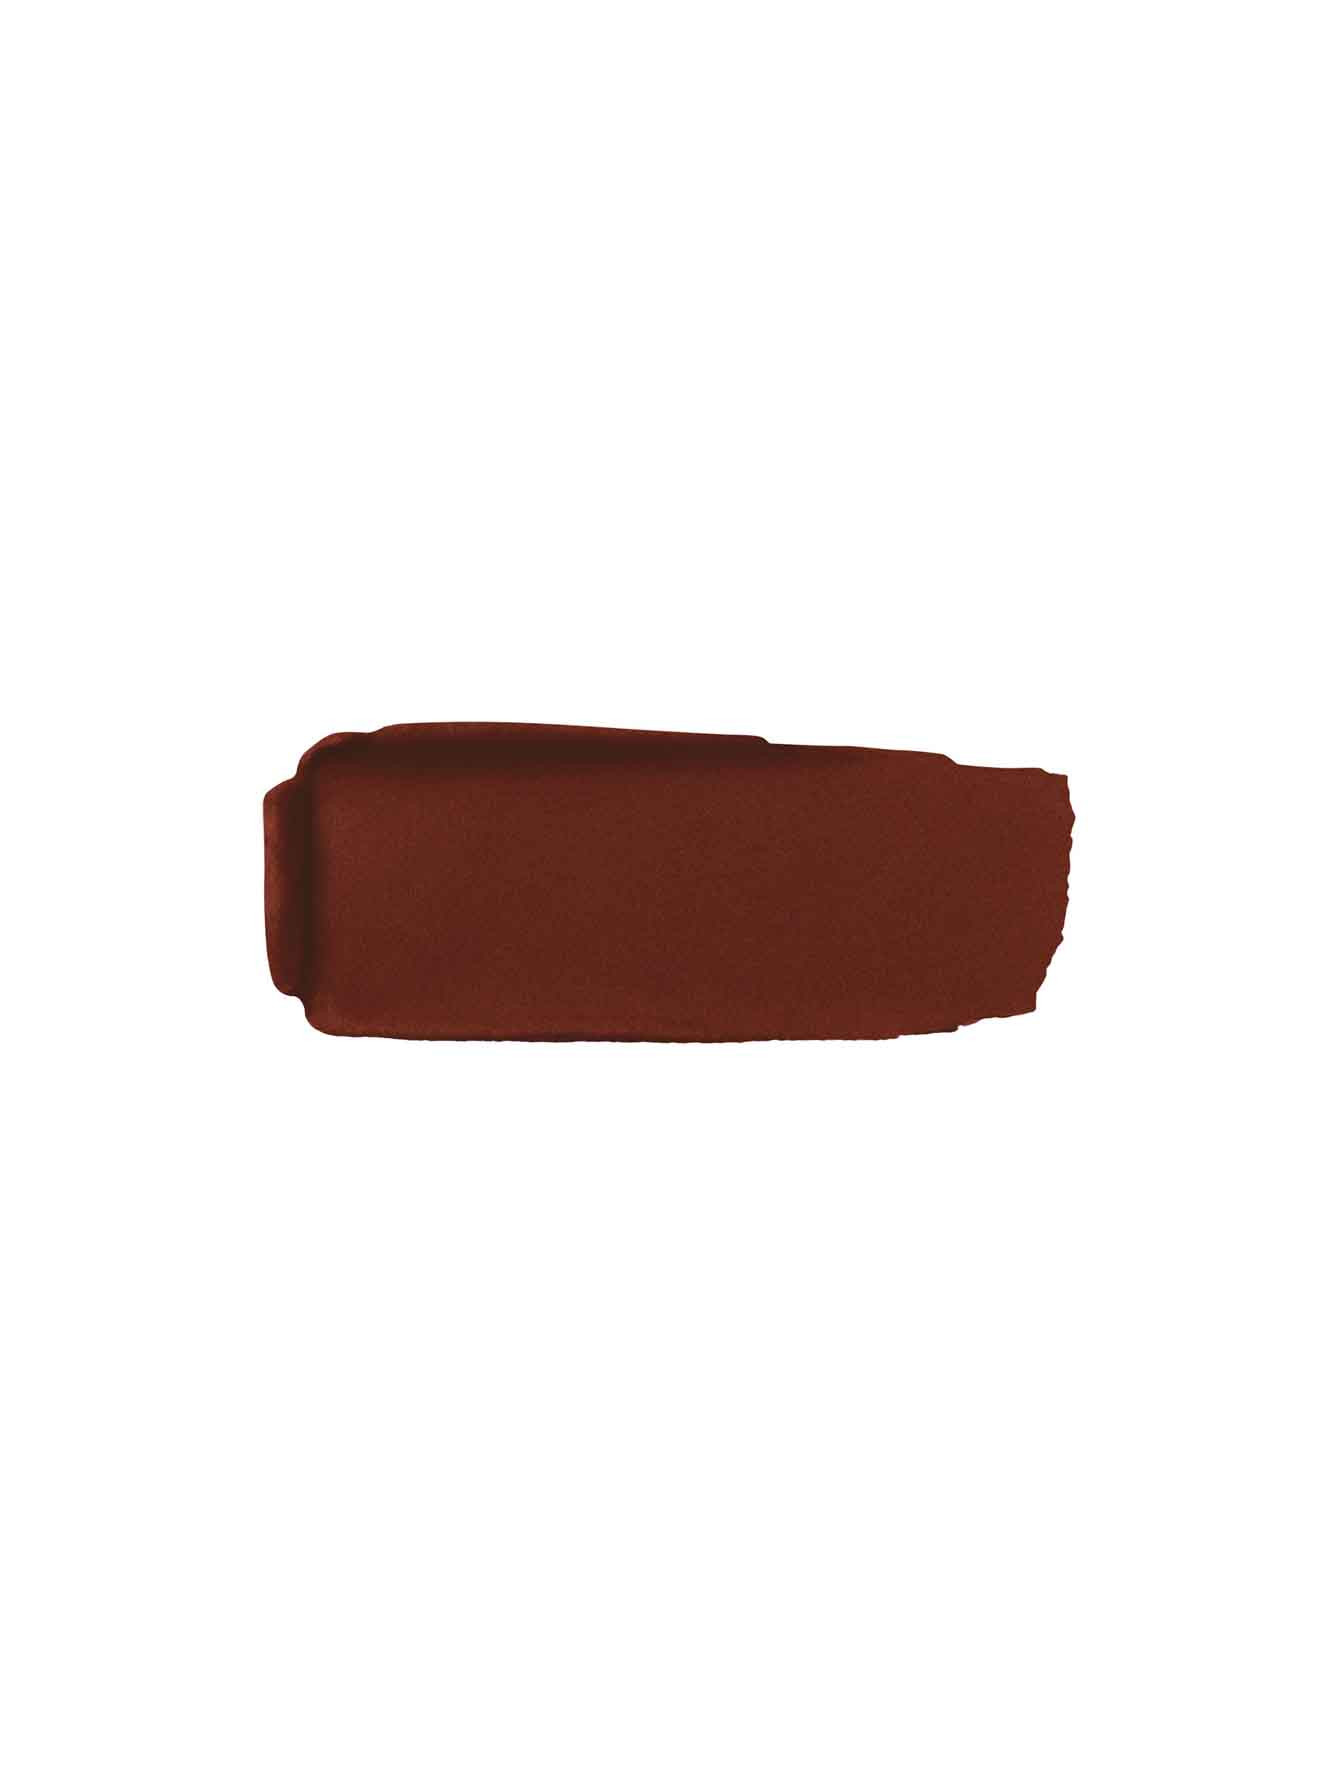 Матовая губная помада №940 Благородный коричневый Rouge G - Обтравка1